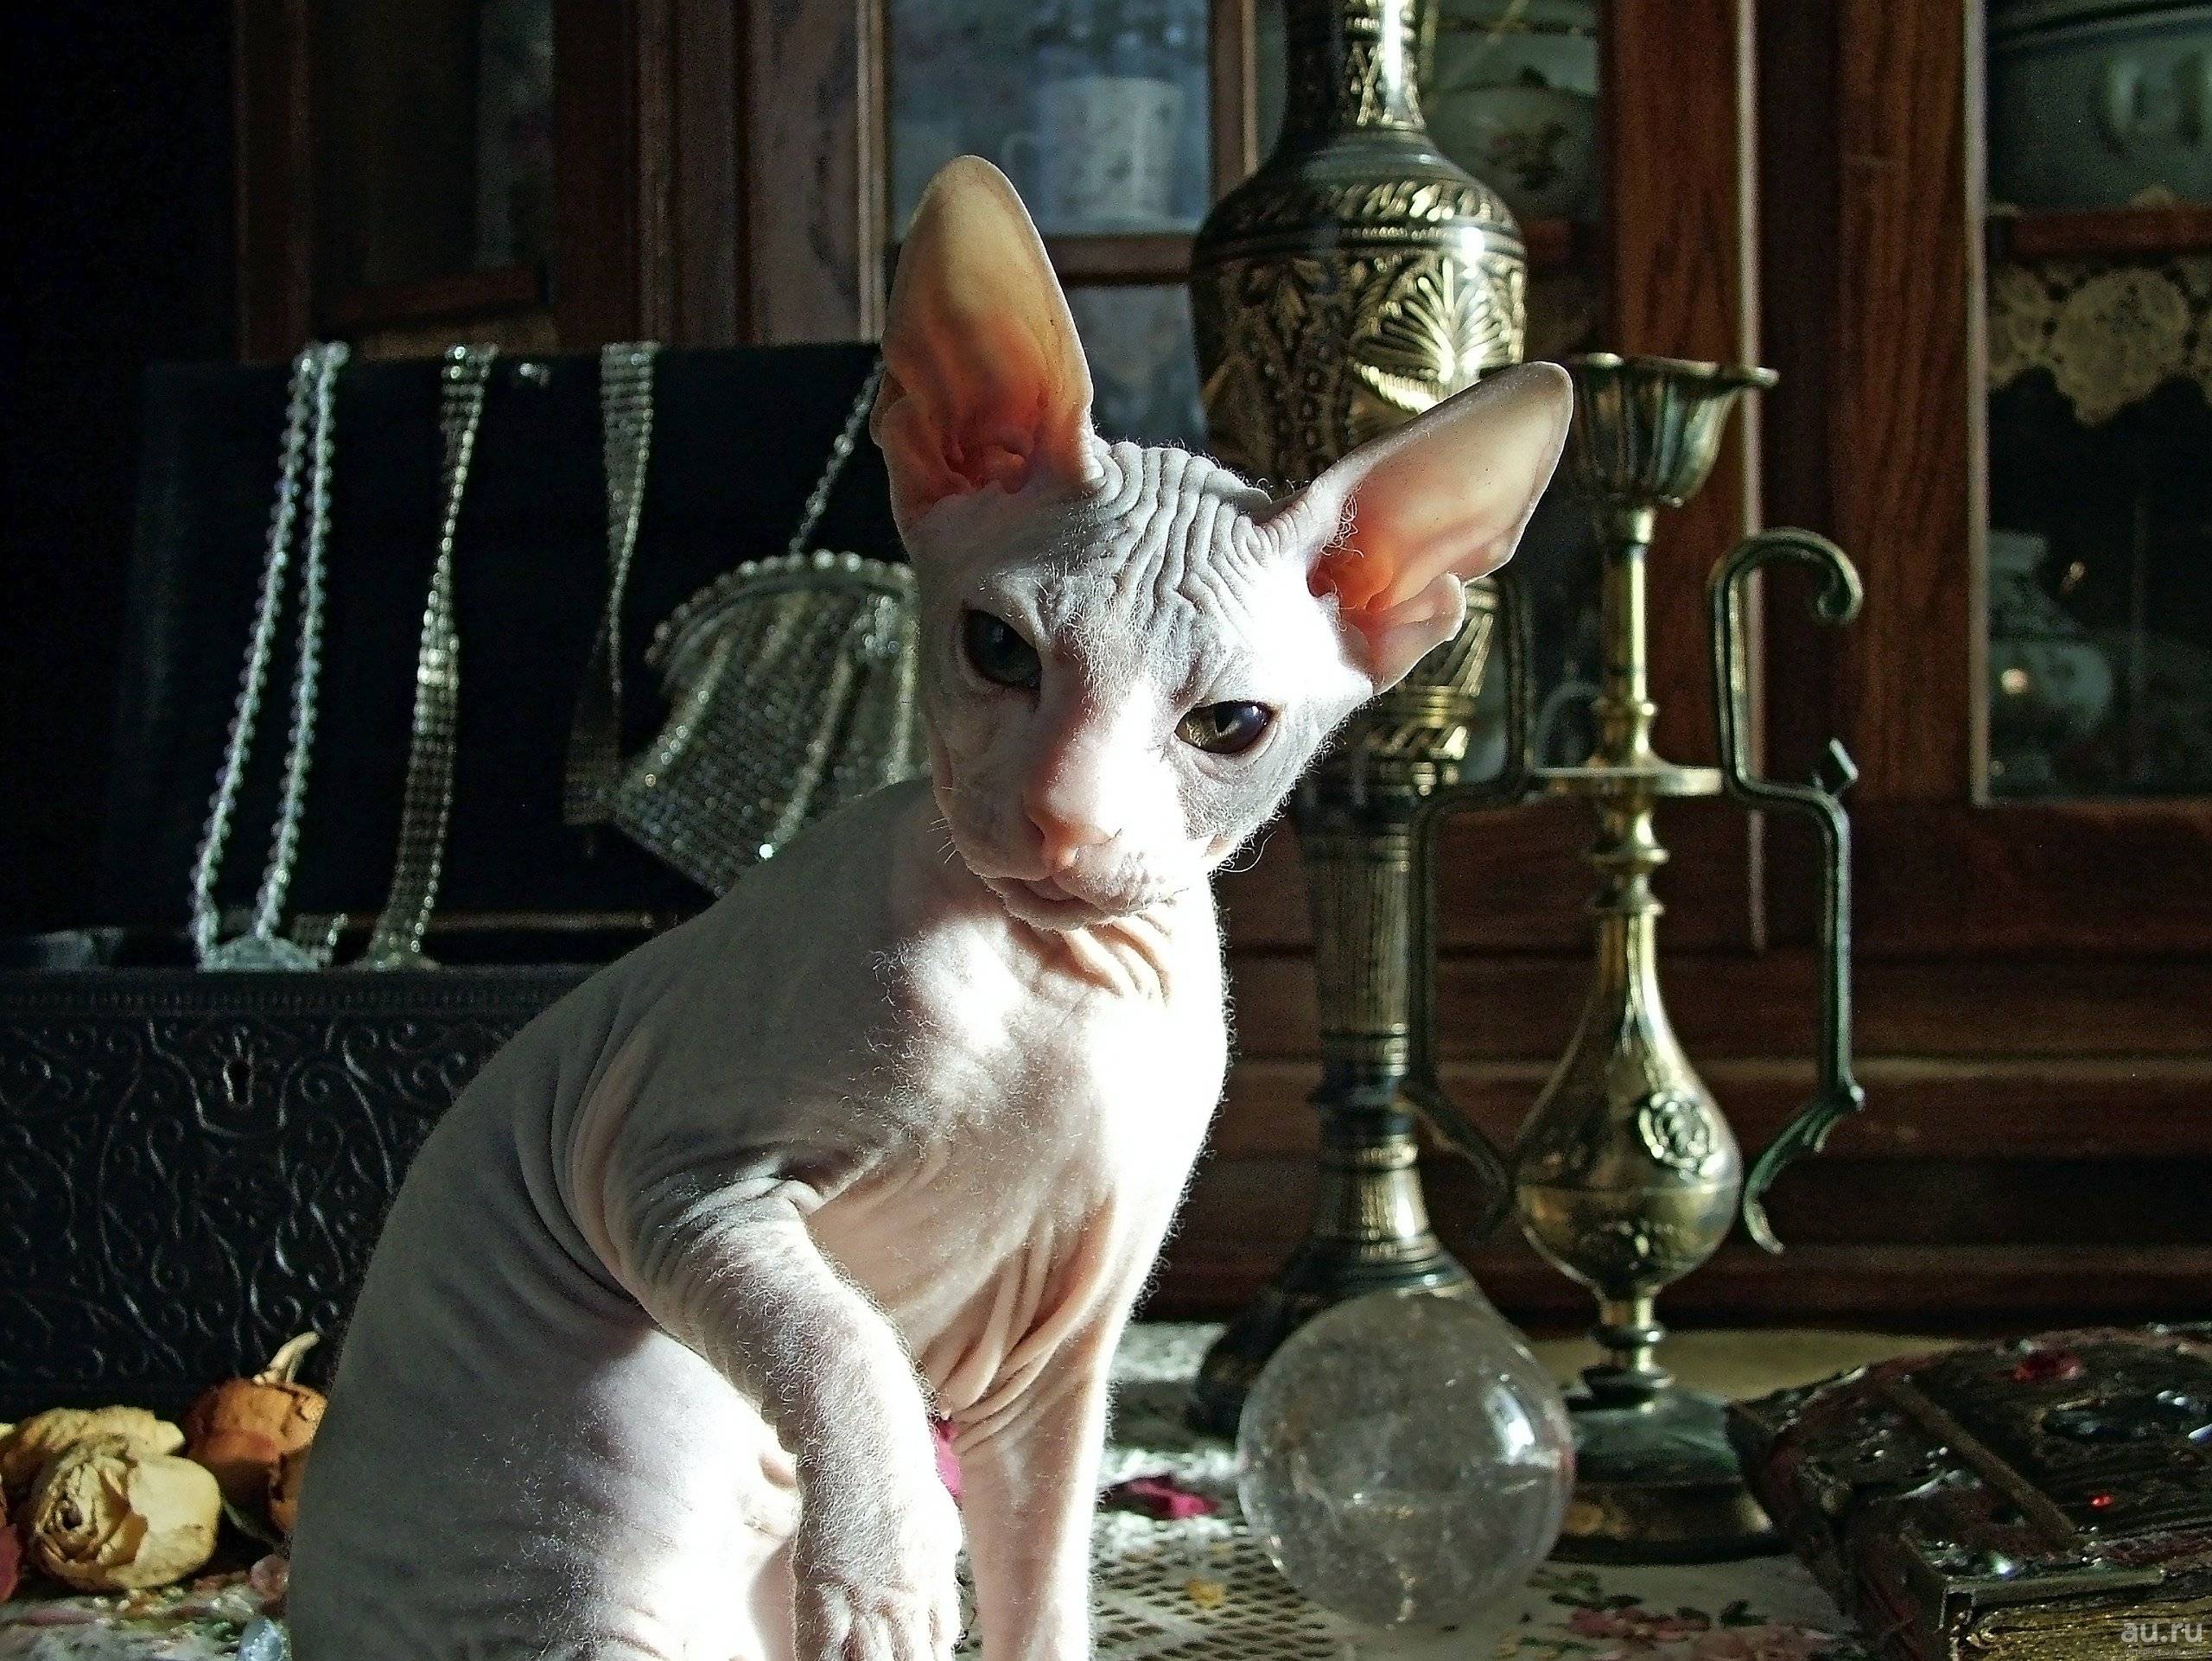 Сфинкс кошка: описание породы, внешний вид, характер лысых питомцев, уход и содержание, кормление